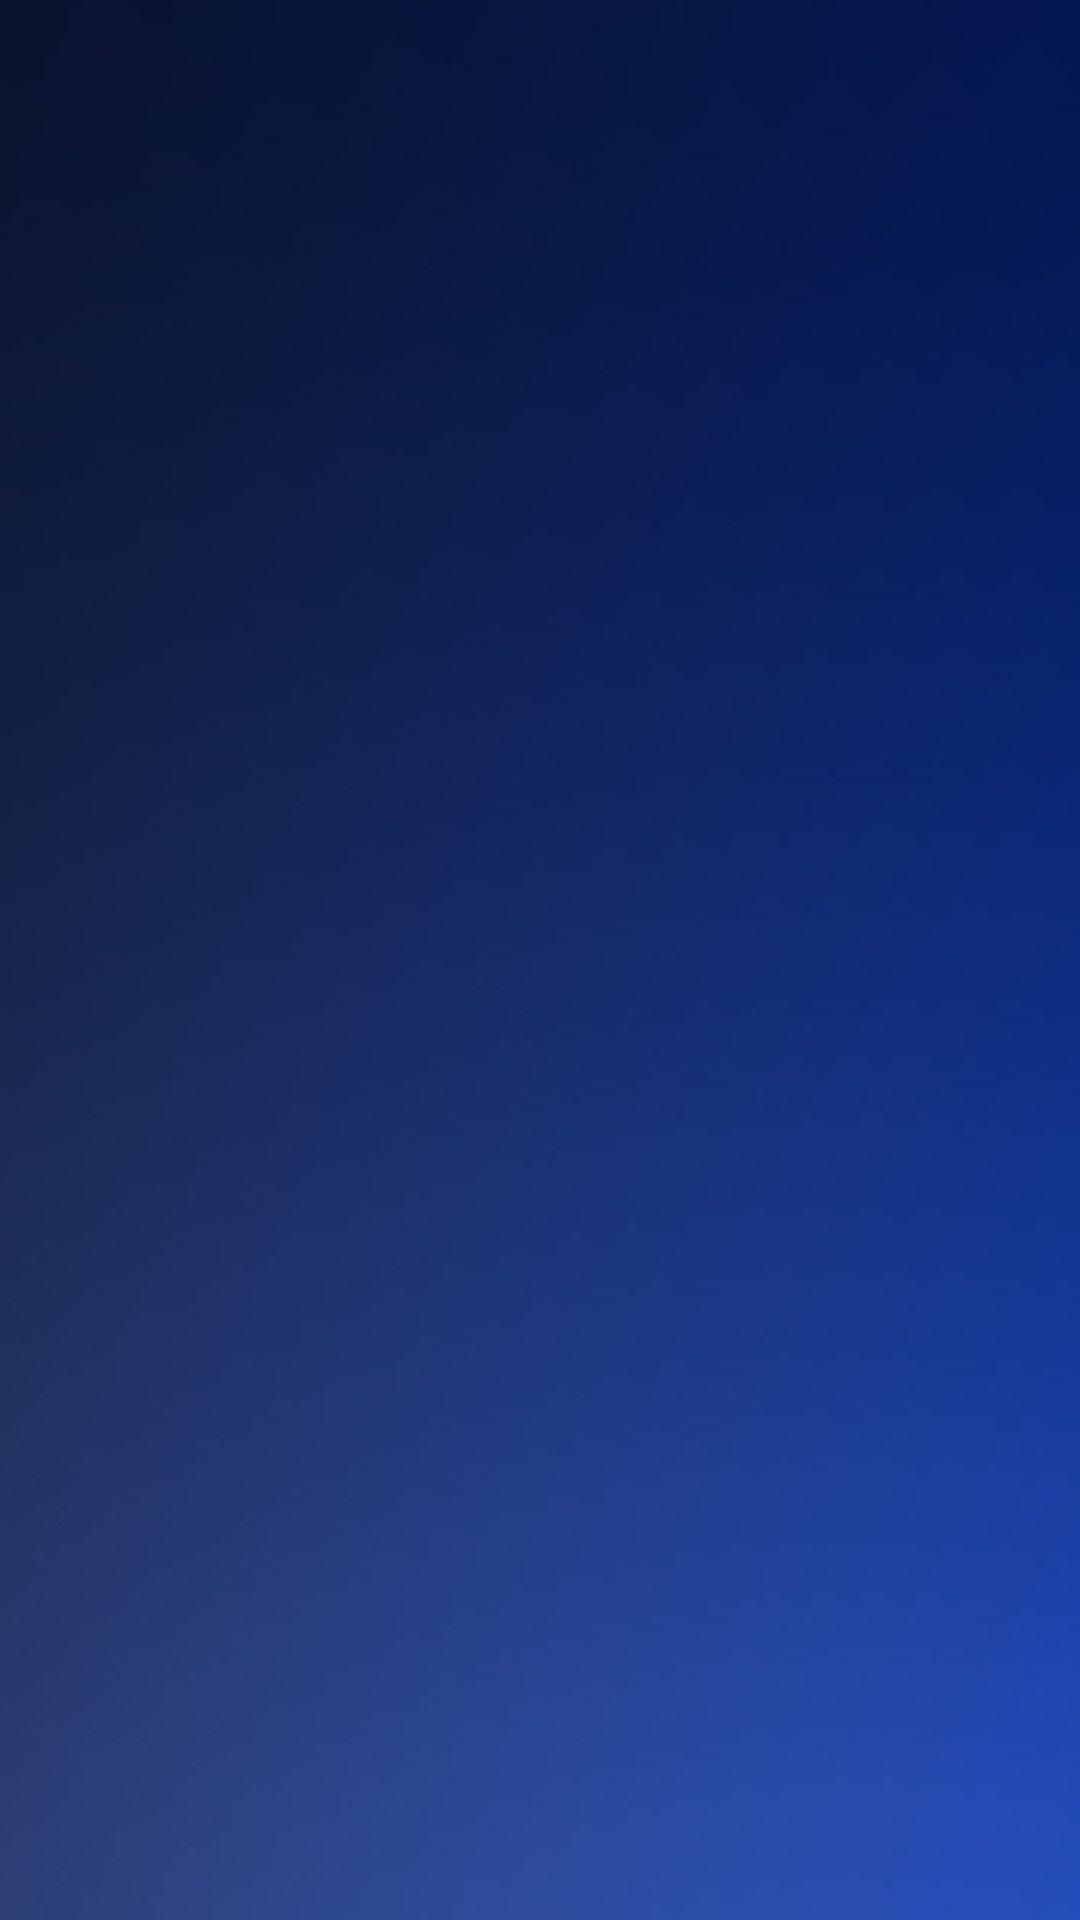 Blue Wallpaper APK pour Android Télécharger